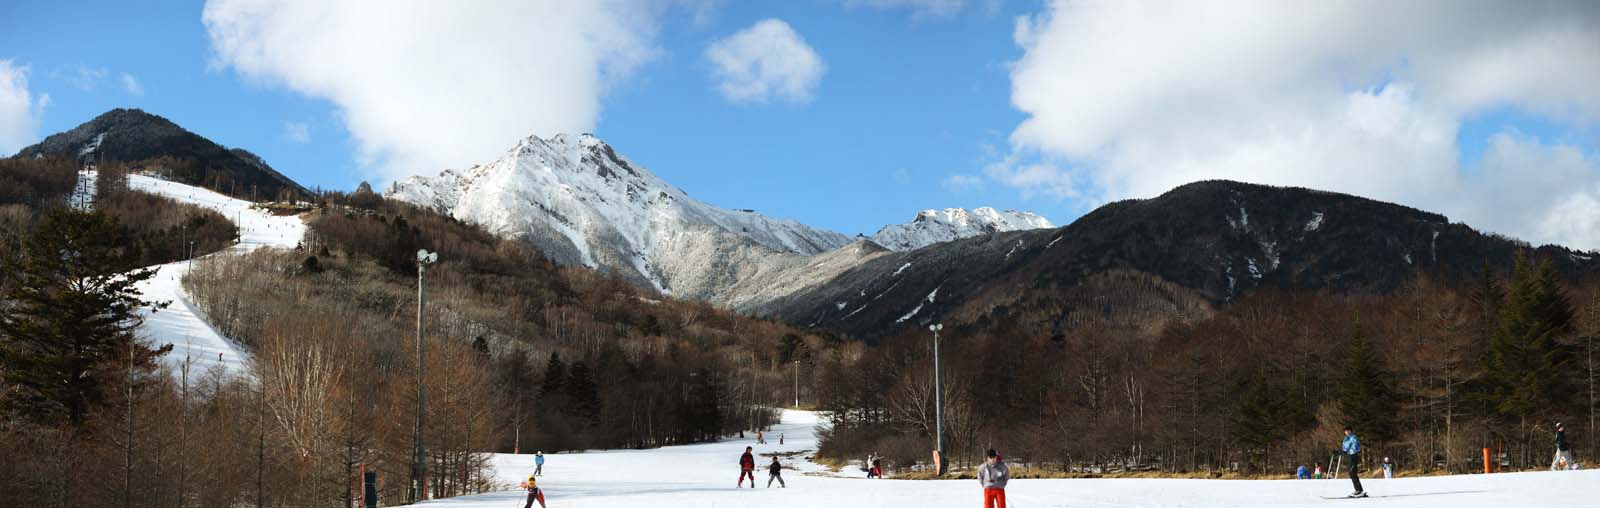 photo, la matire, libre, amnage, dcrivez, photo de la rserve,Yatsugatake, Yatsugatake, inclinaison, ski, piste